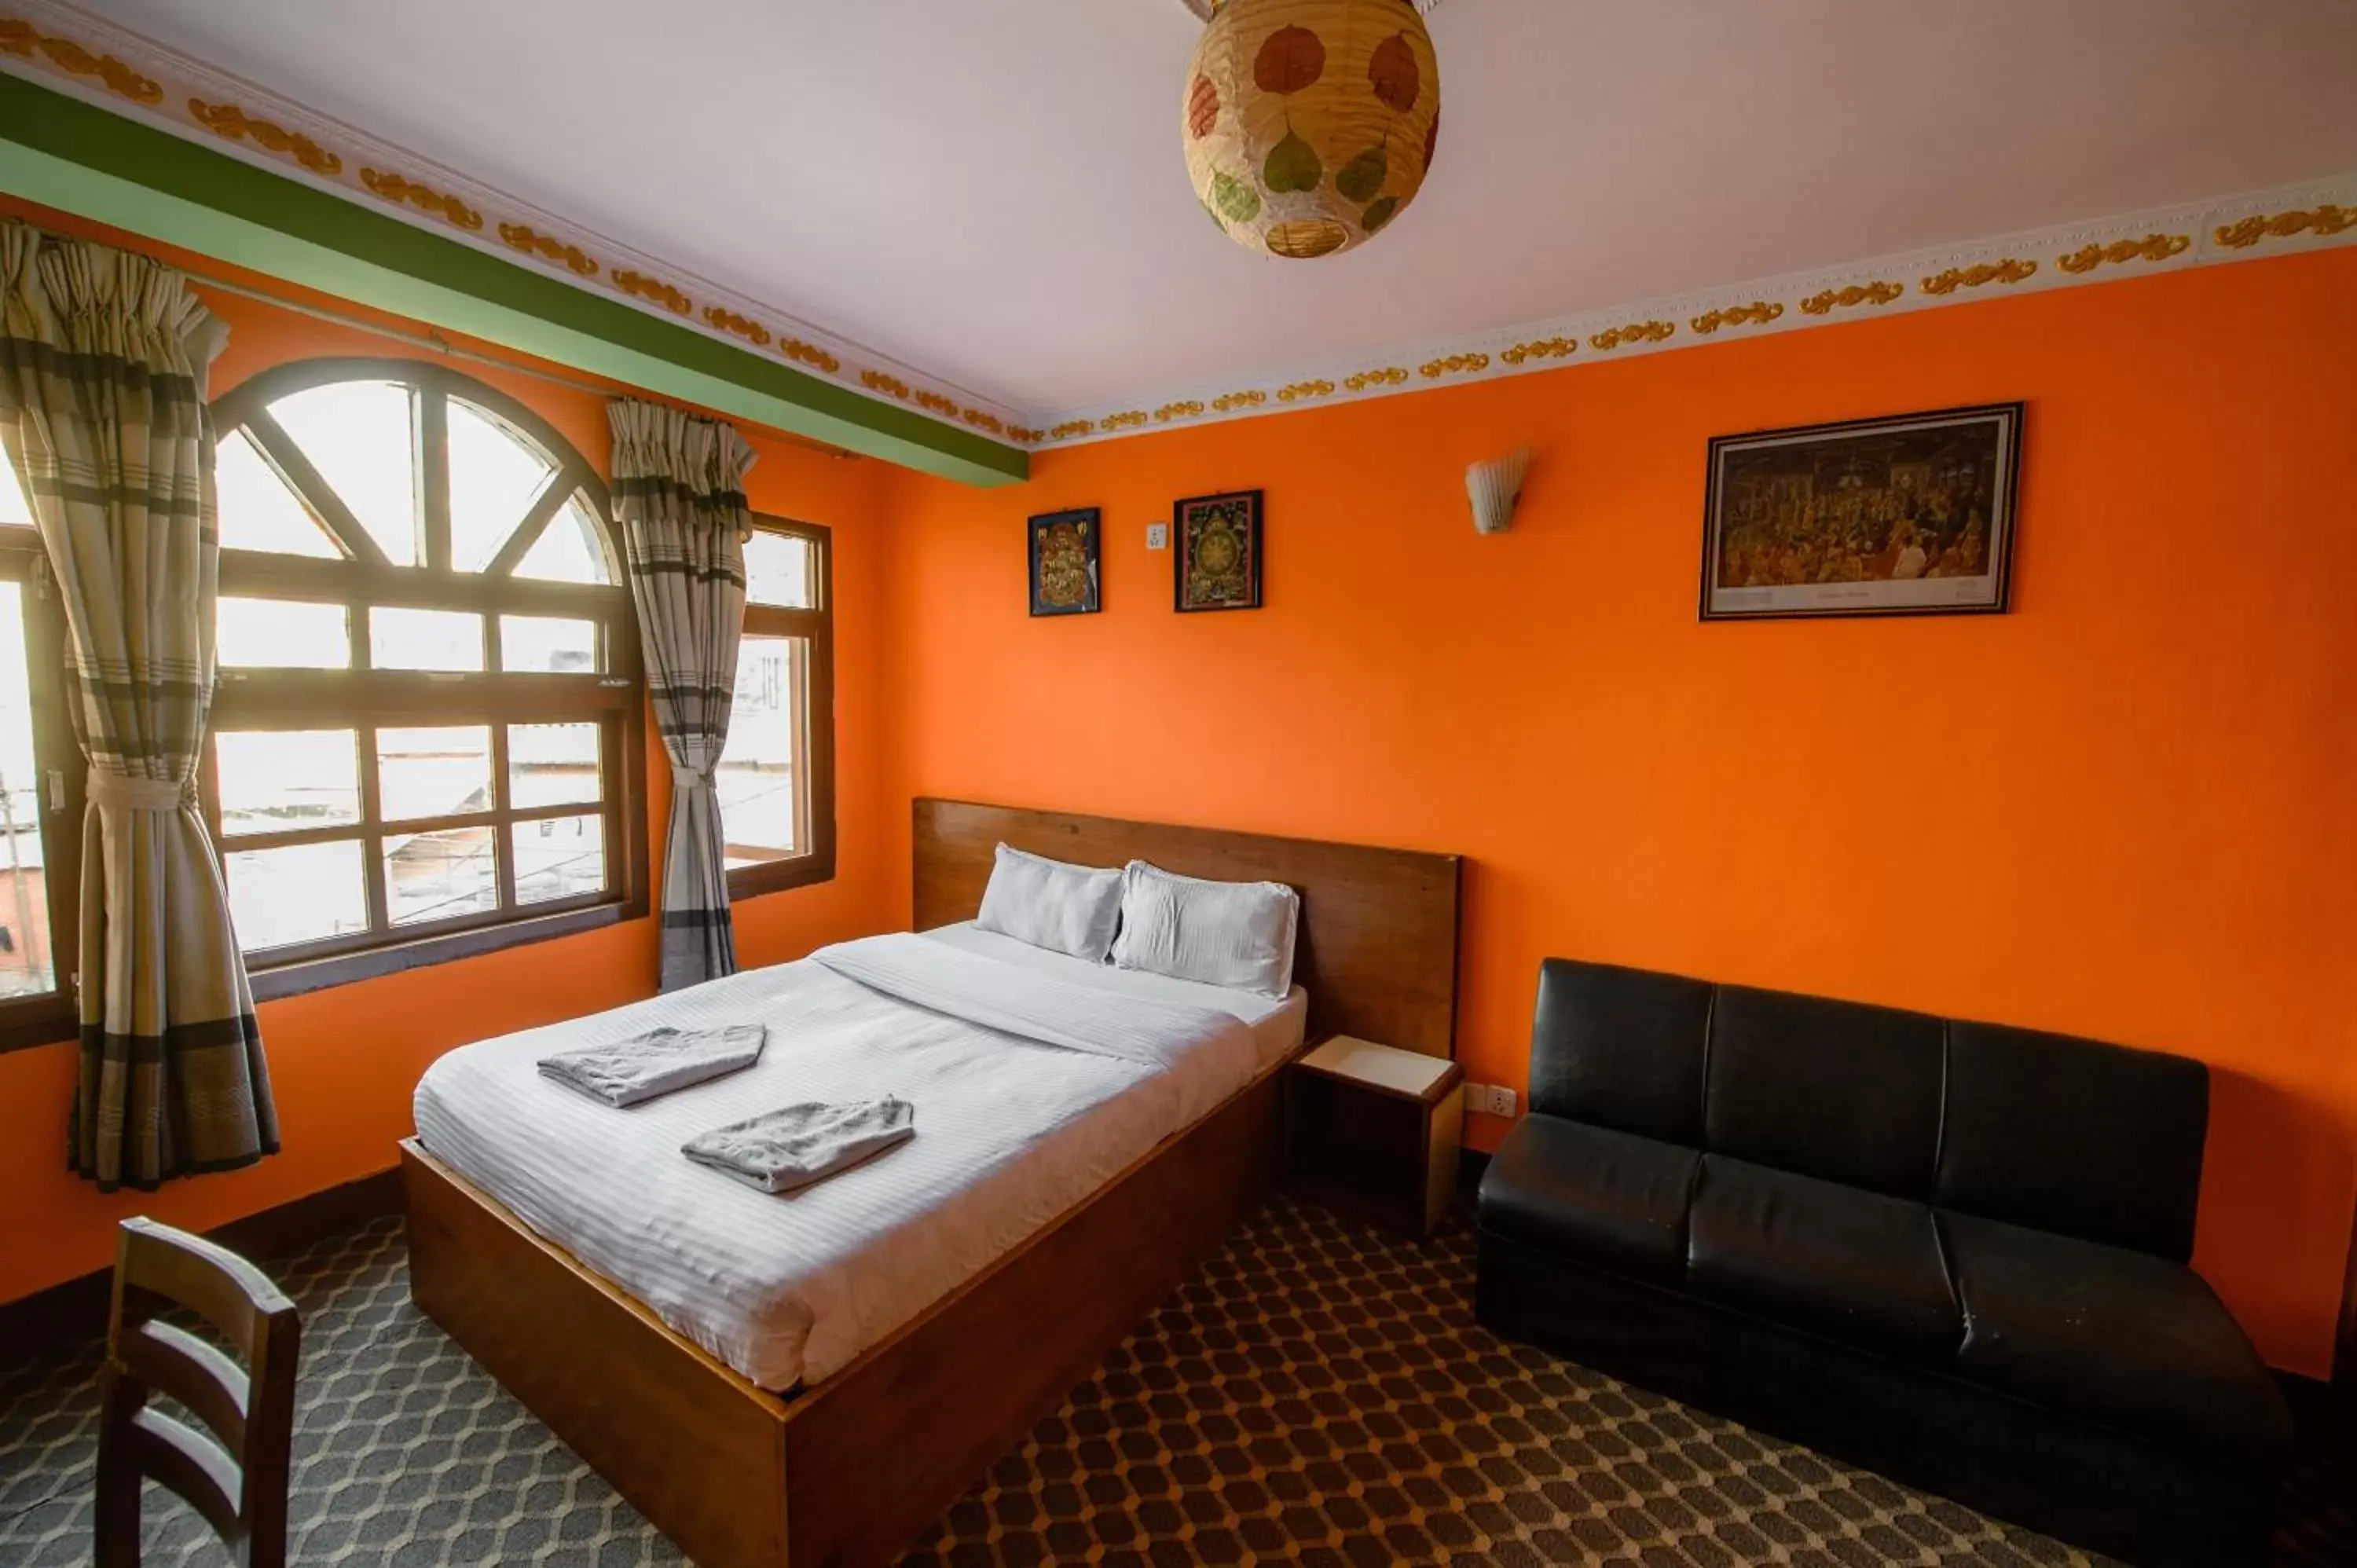 Bedroom in Hotel Pomelo House